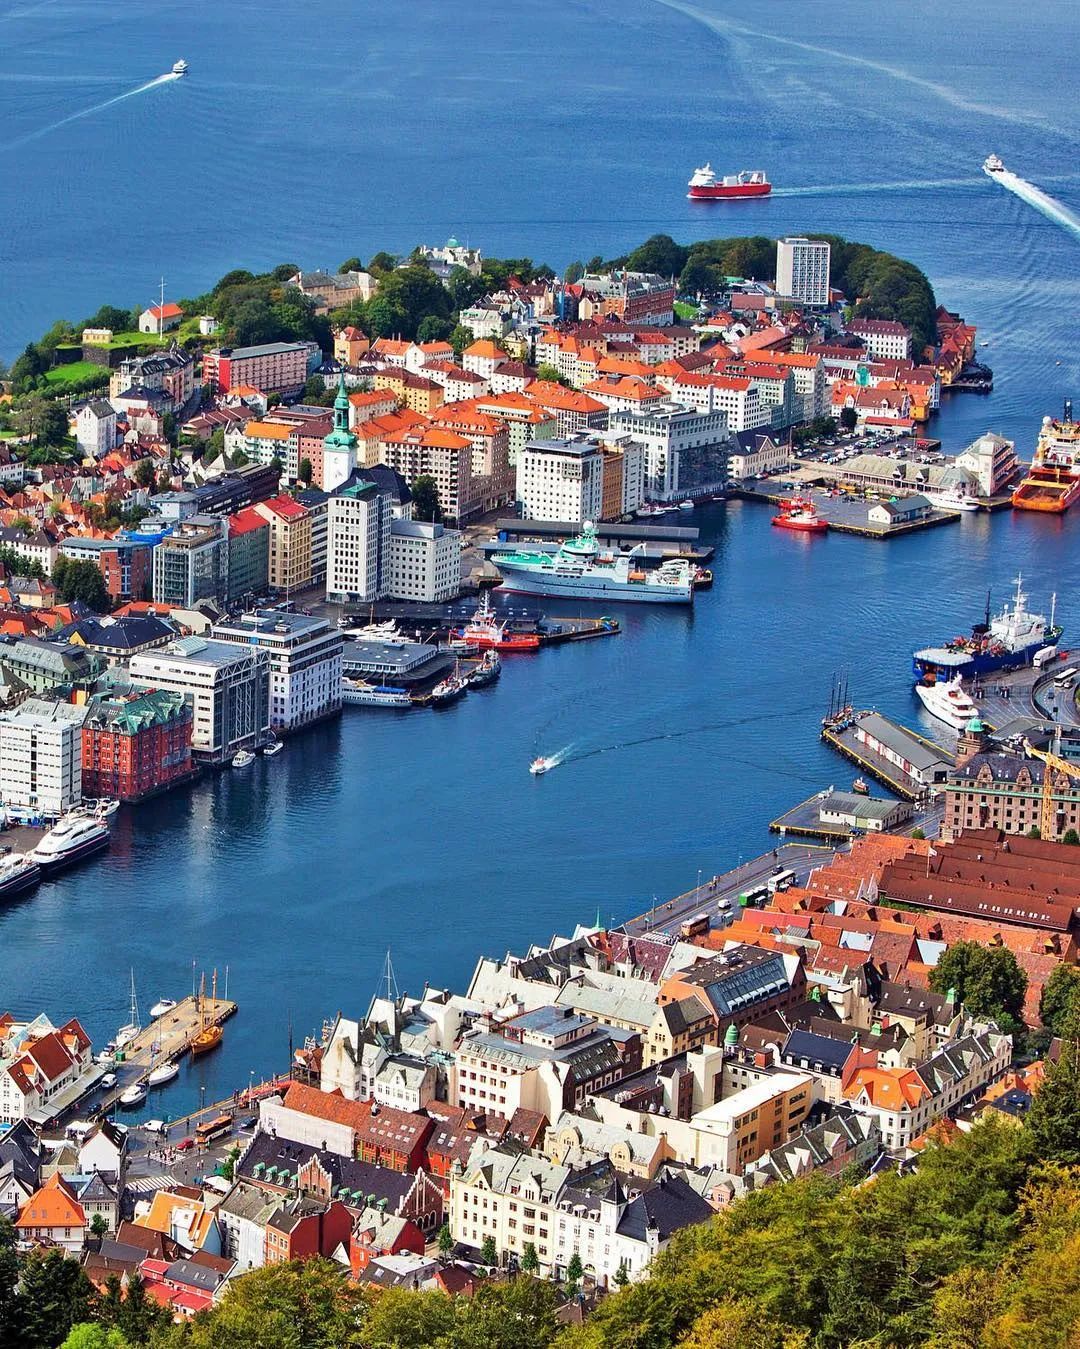 photo:visitbergen如今,卑尔根已成为挪威第二大城市,也是挪威资苘